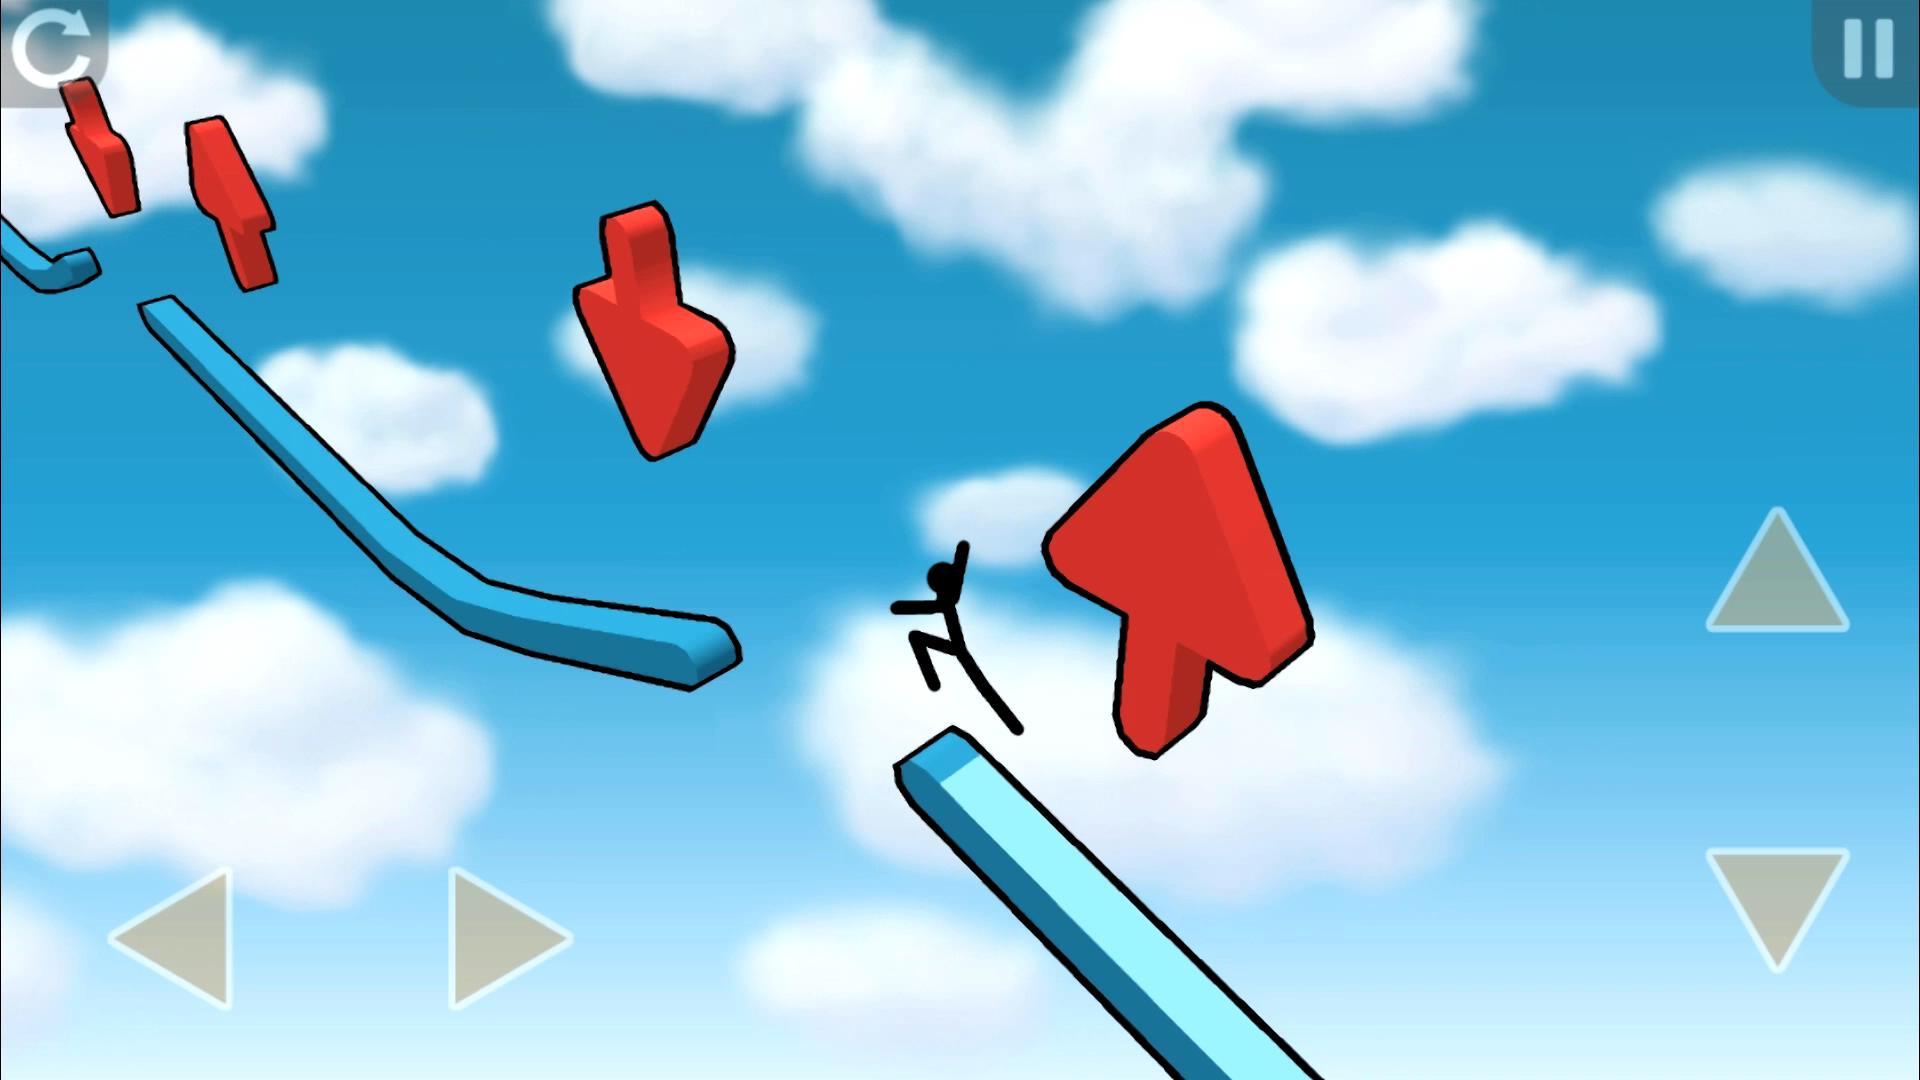 《高空转向》:跑酷游戏的优秀作品-360手游社